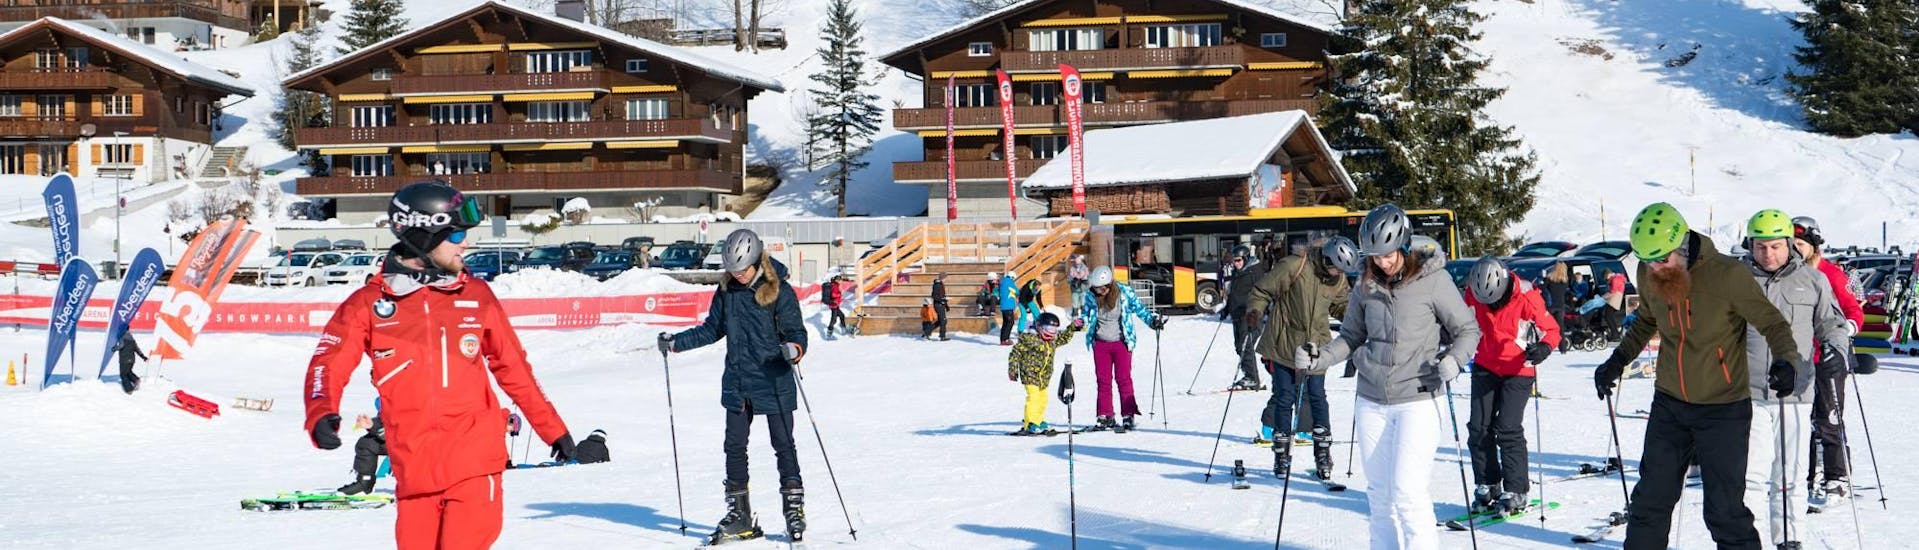 Premier Cours de ski Adultes + Équipement & Transfert depuis Interlaken.